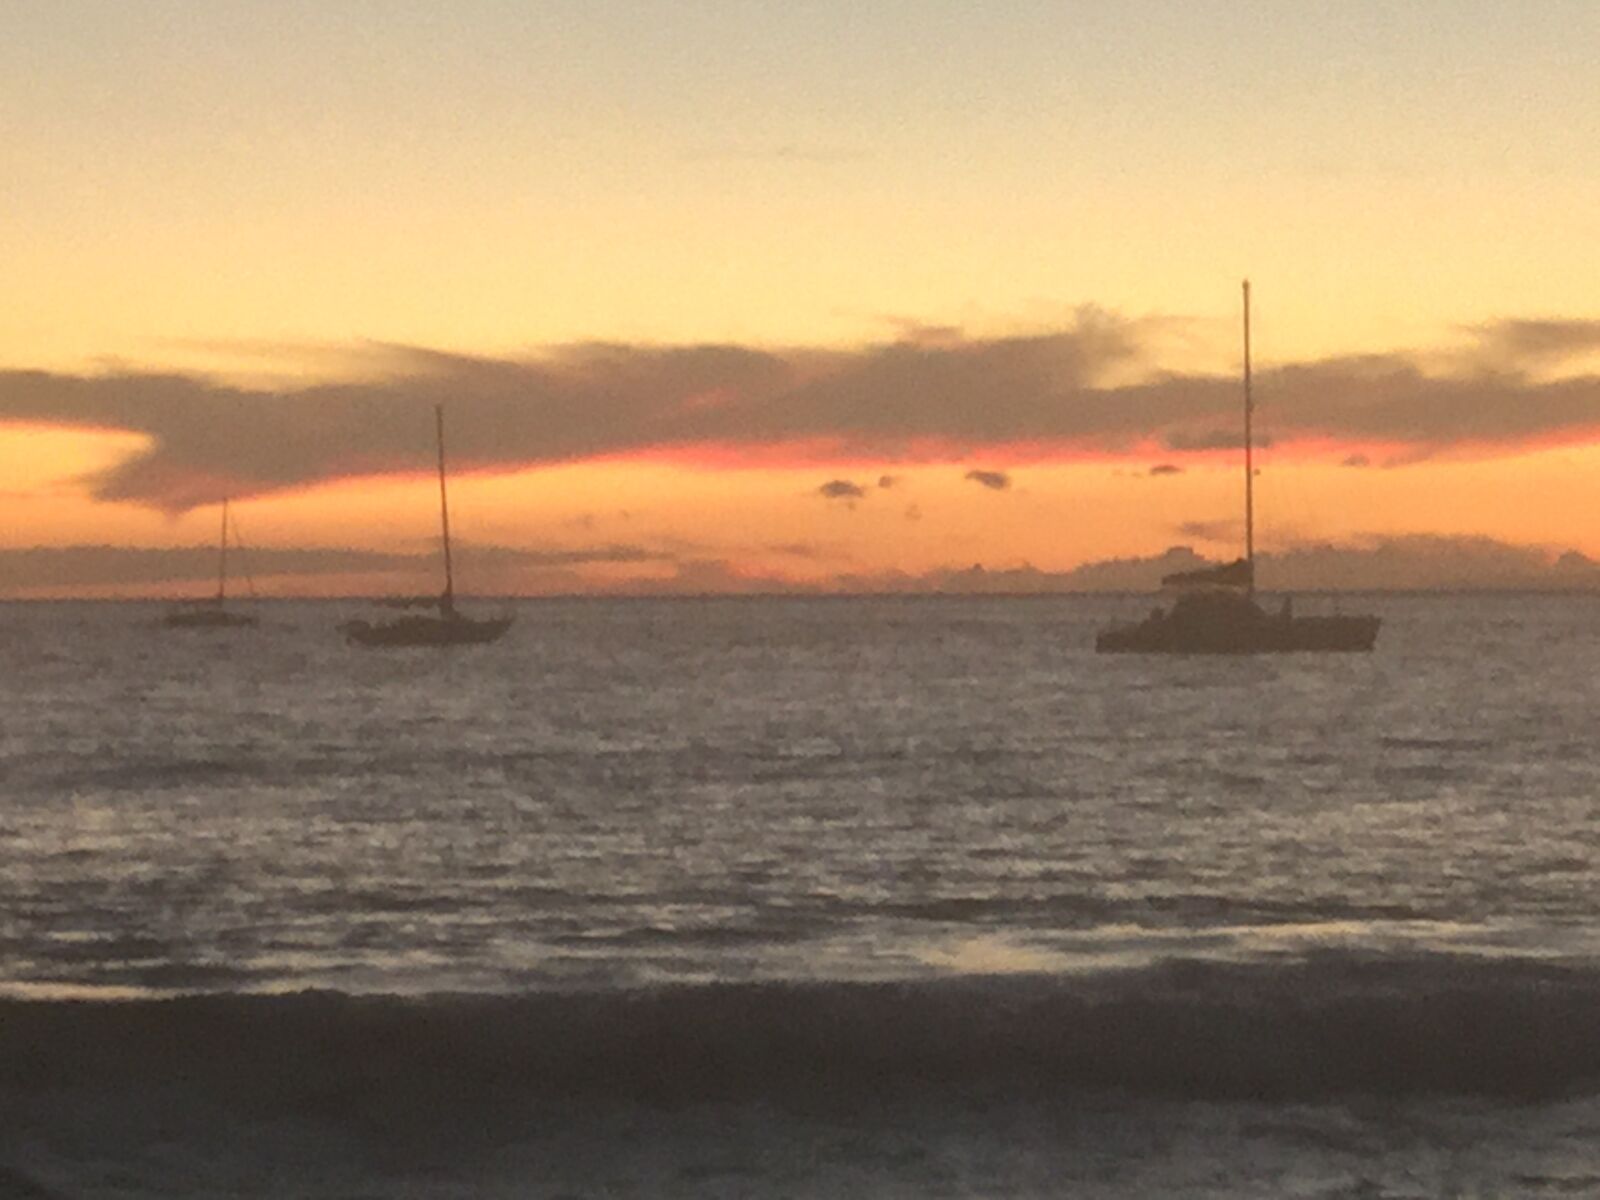 Apple iPad mini 4 sample photo. Maui, sunset, boats photography